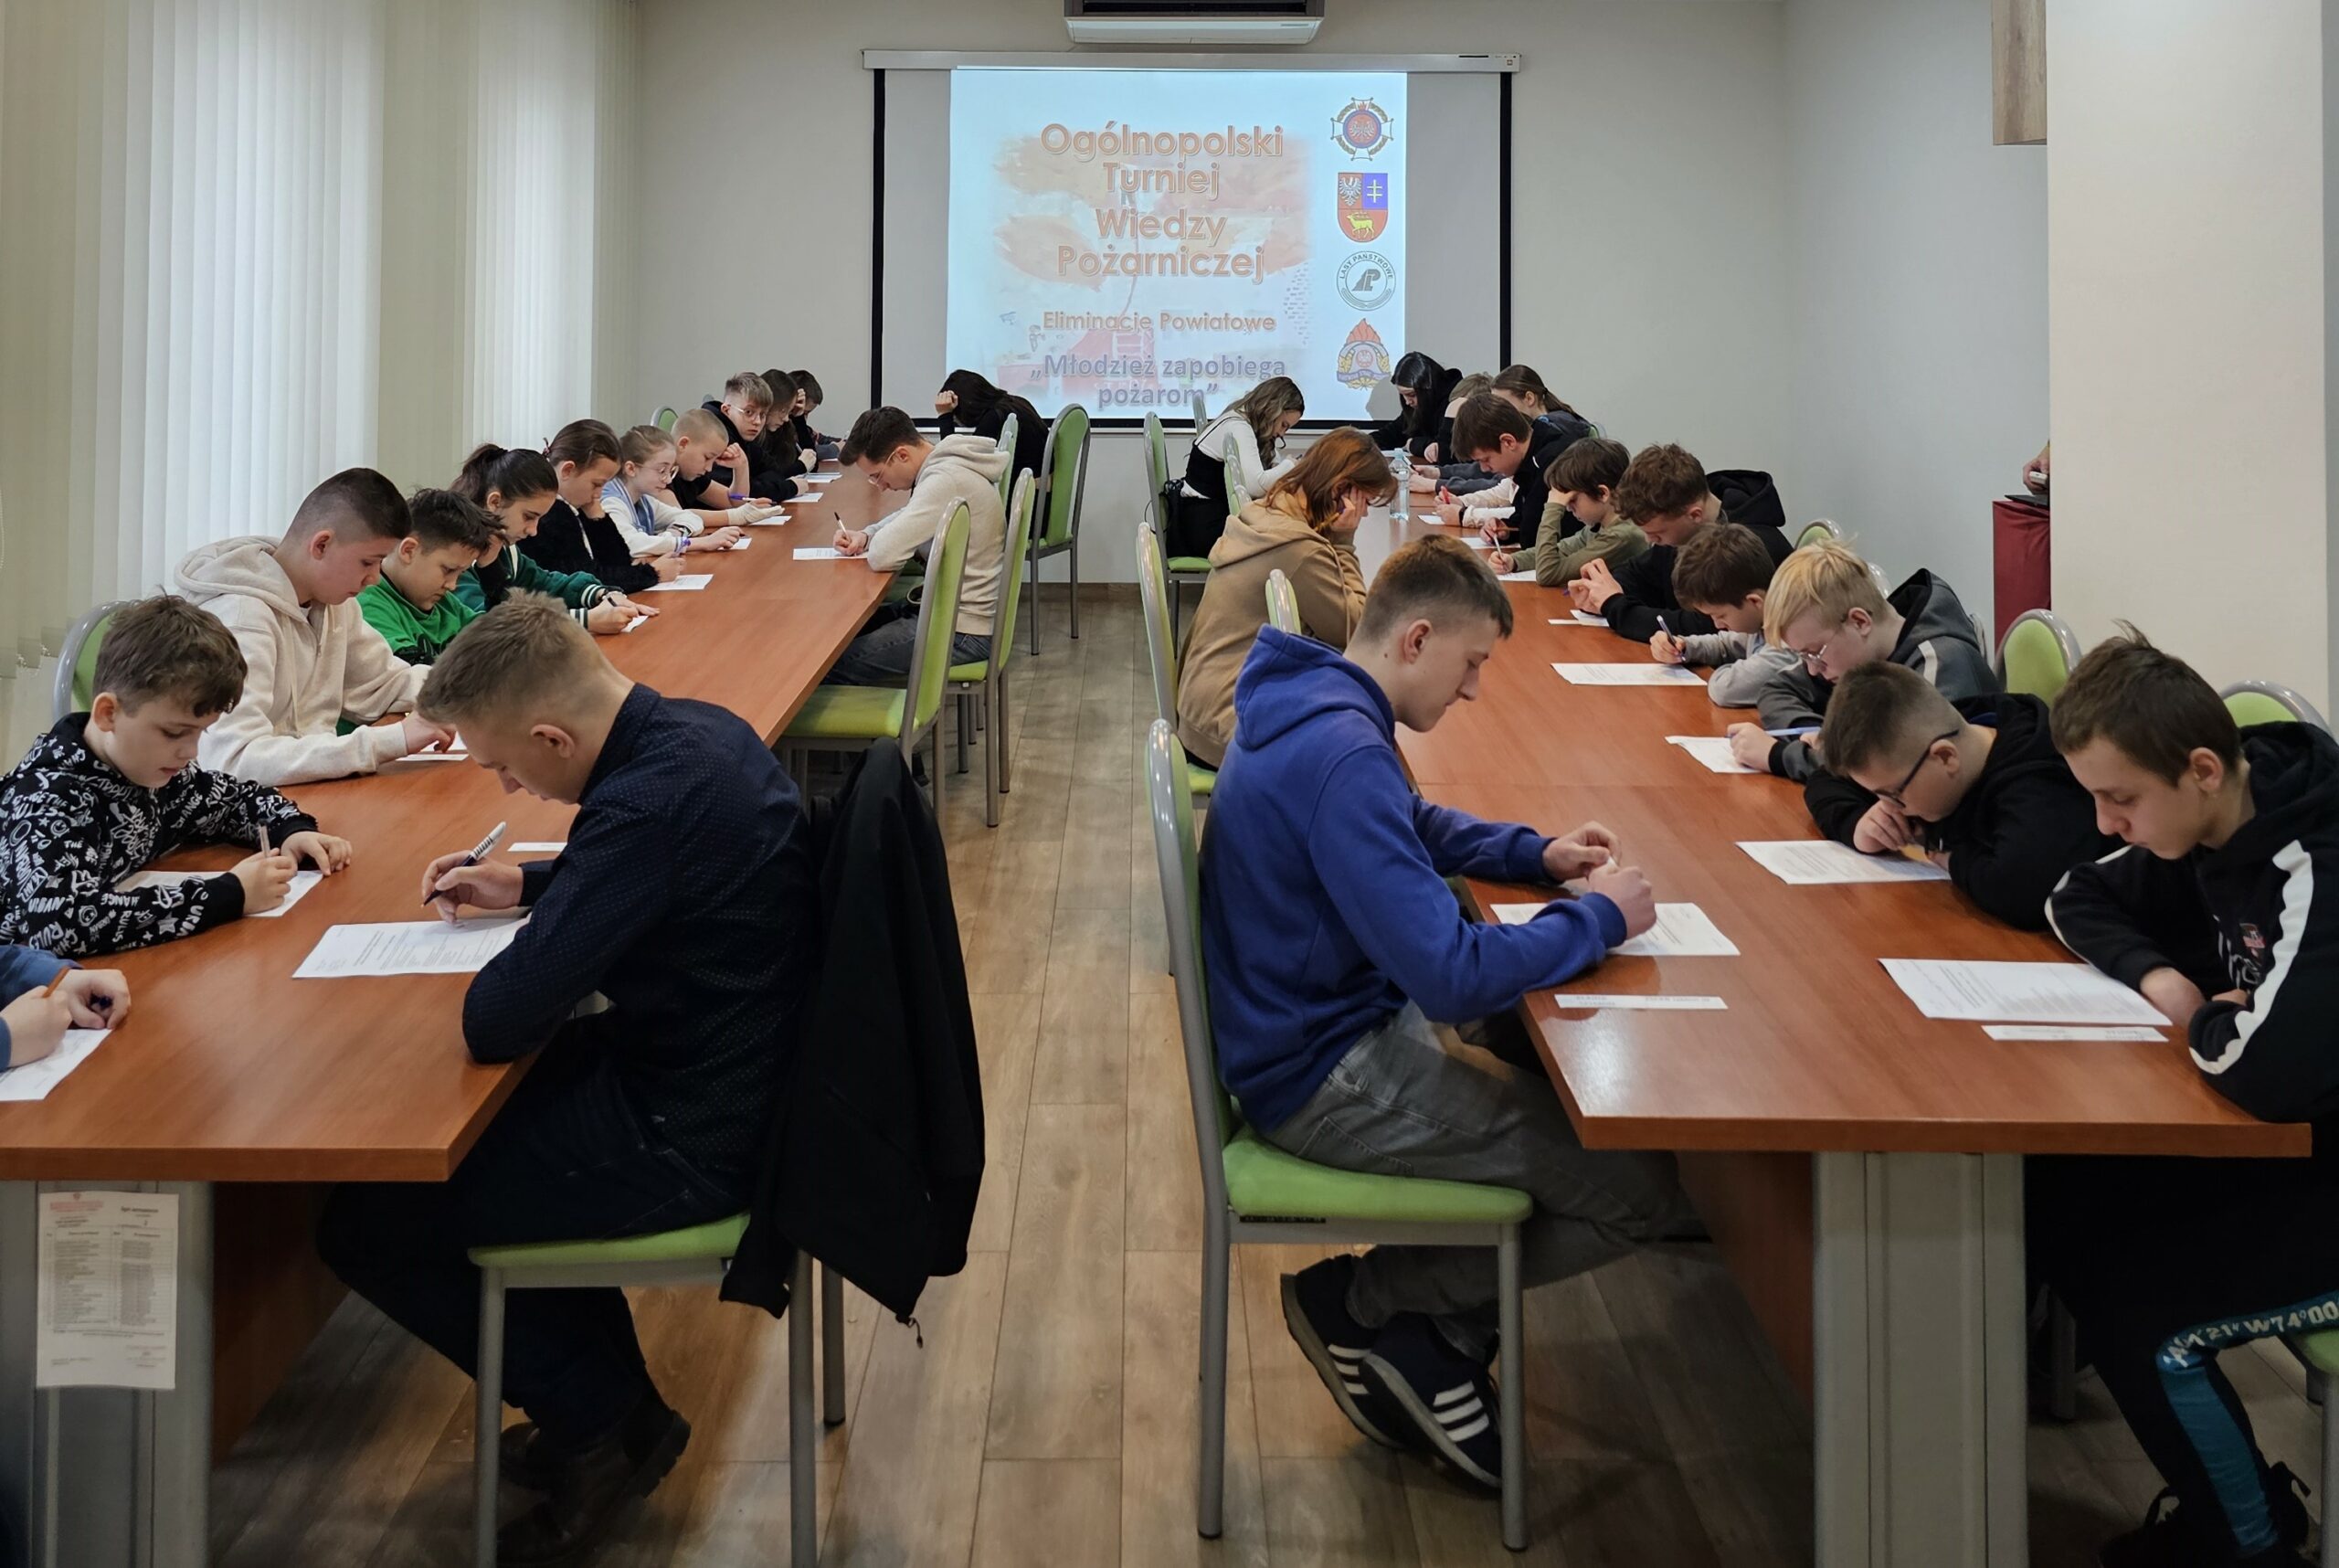 Młodzież siedzi przy długich stołach i rozwiązuje test. Na ścianie w głębi sali wyświetlony jest napis Ogólnopolski Turniej Wiedzy Pożarniczej.